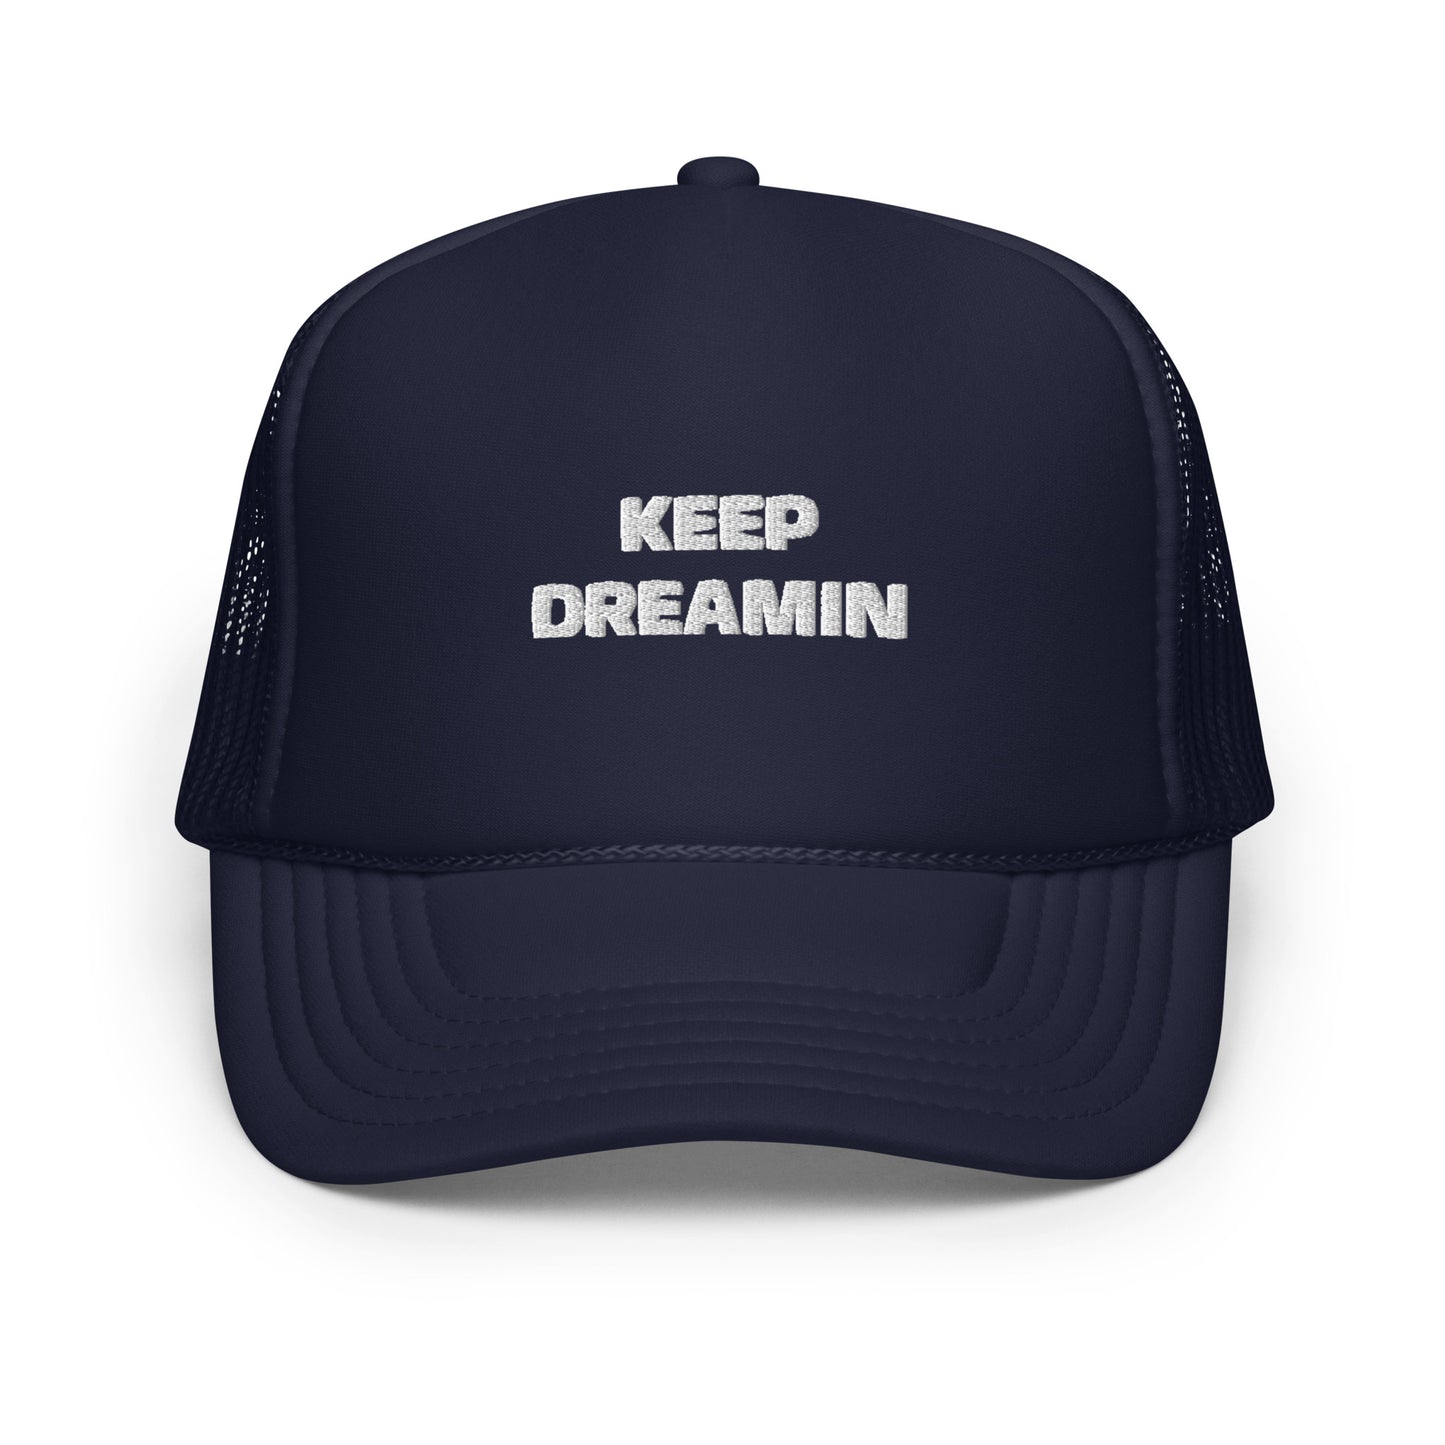 Keep Dreamin' Trucker Hat